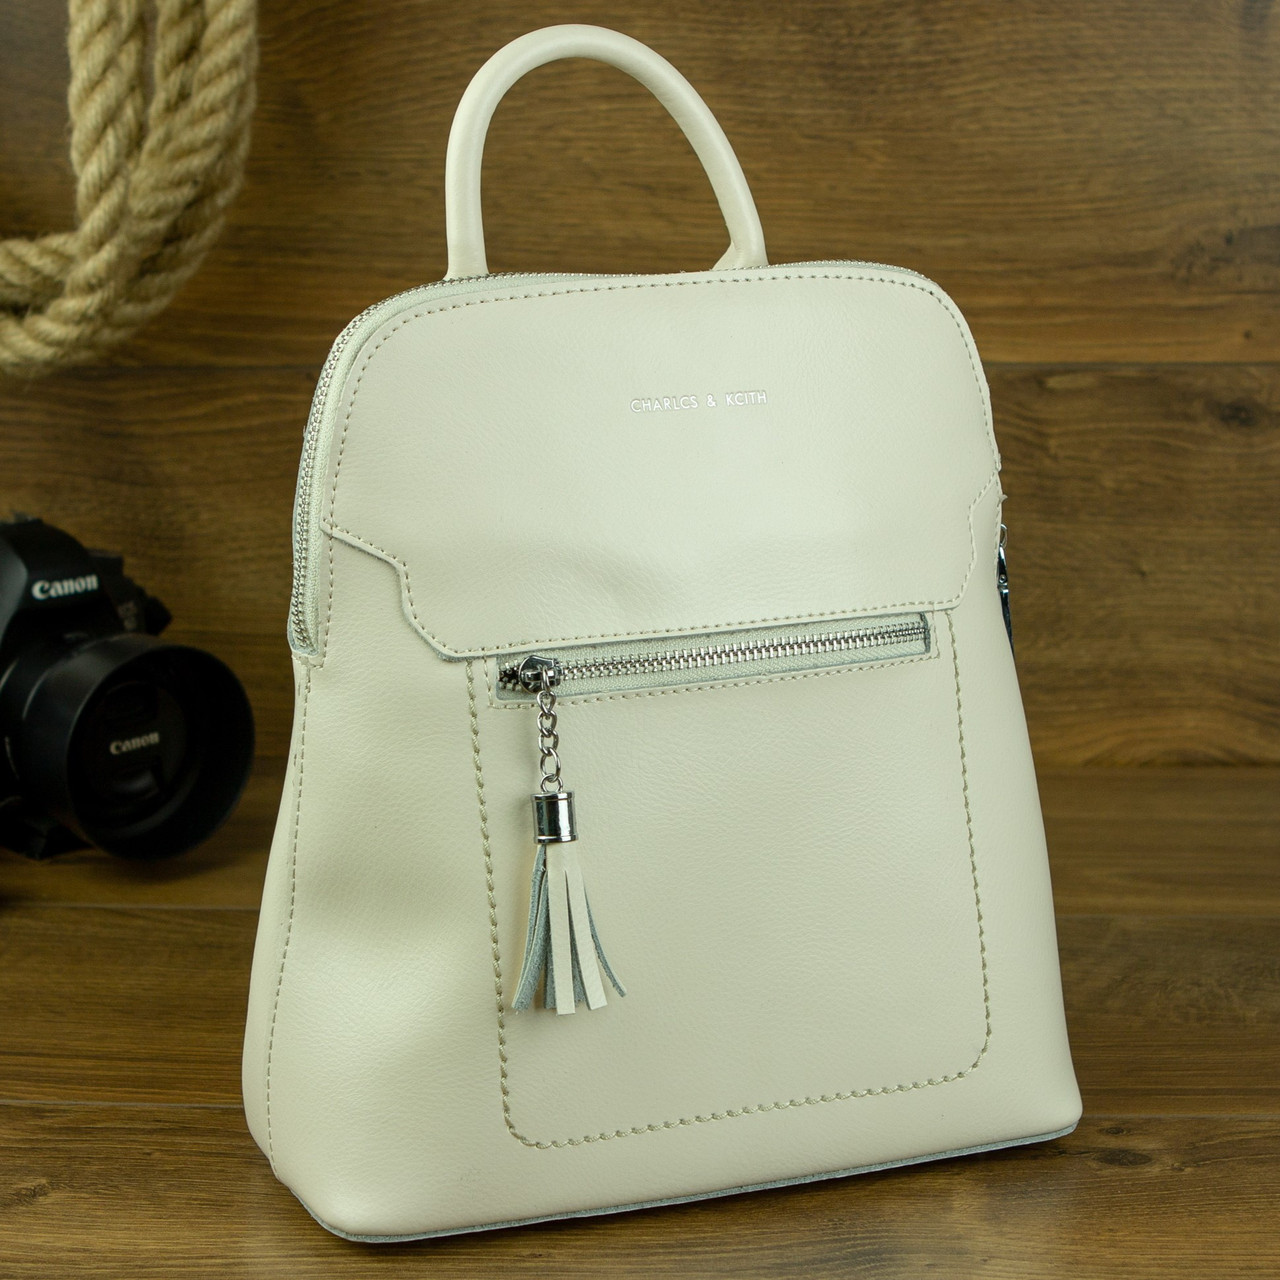 Жіночий стильний міський рюкзак з натуральної шкіри в білому кольорі, фото 1